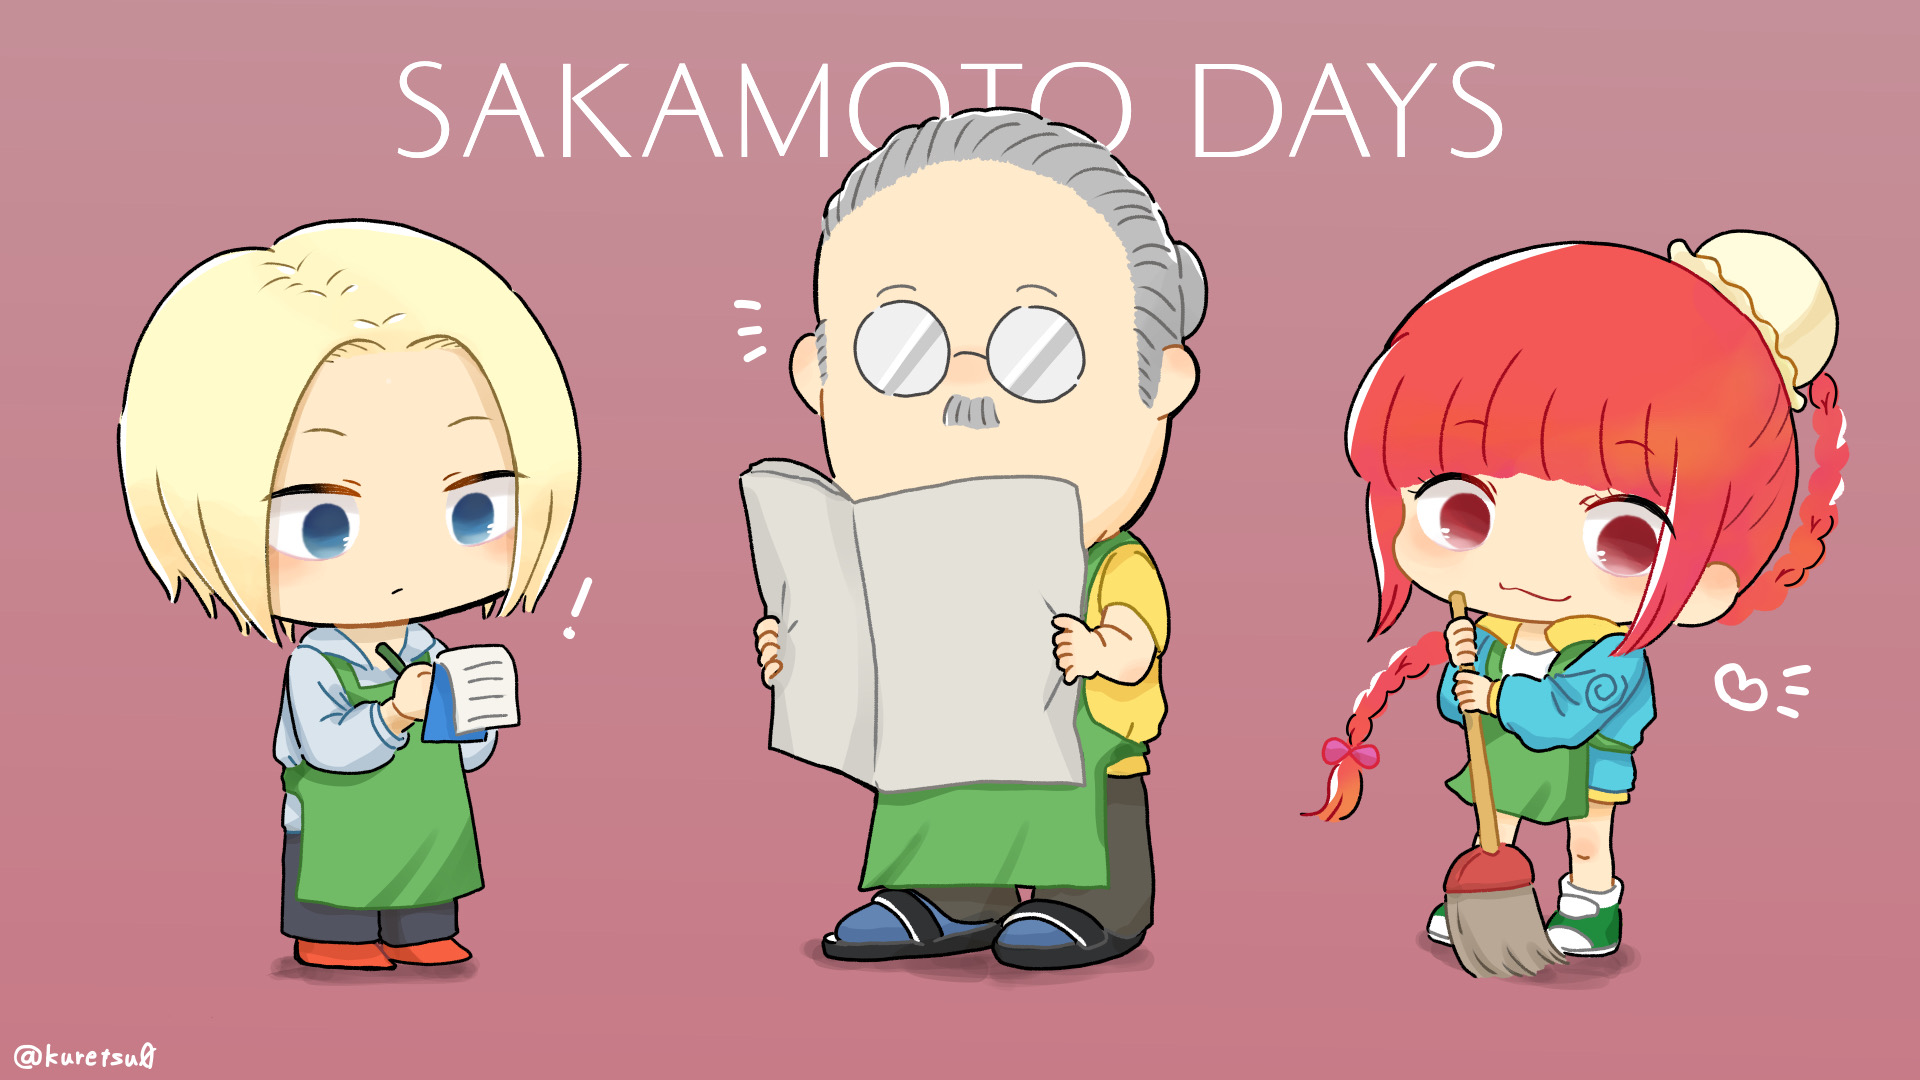 SAKAMOTO DAYS-SAKAMOTODAYS场面